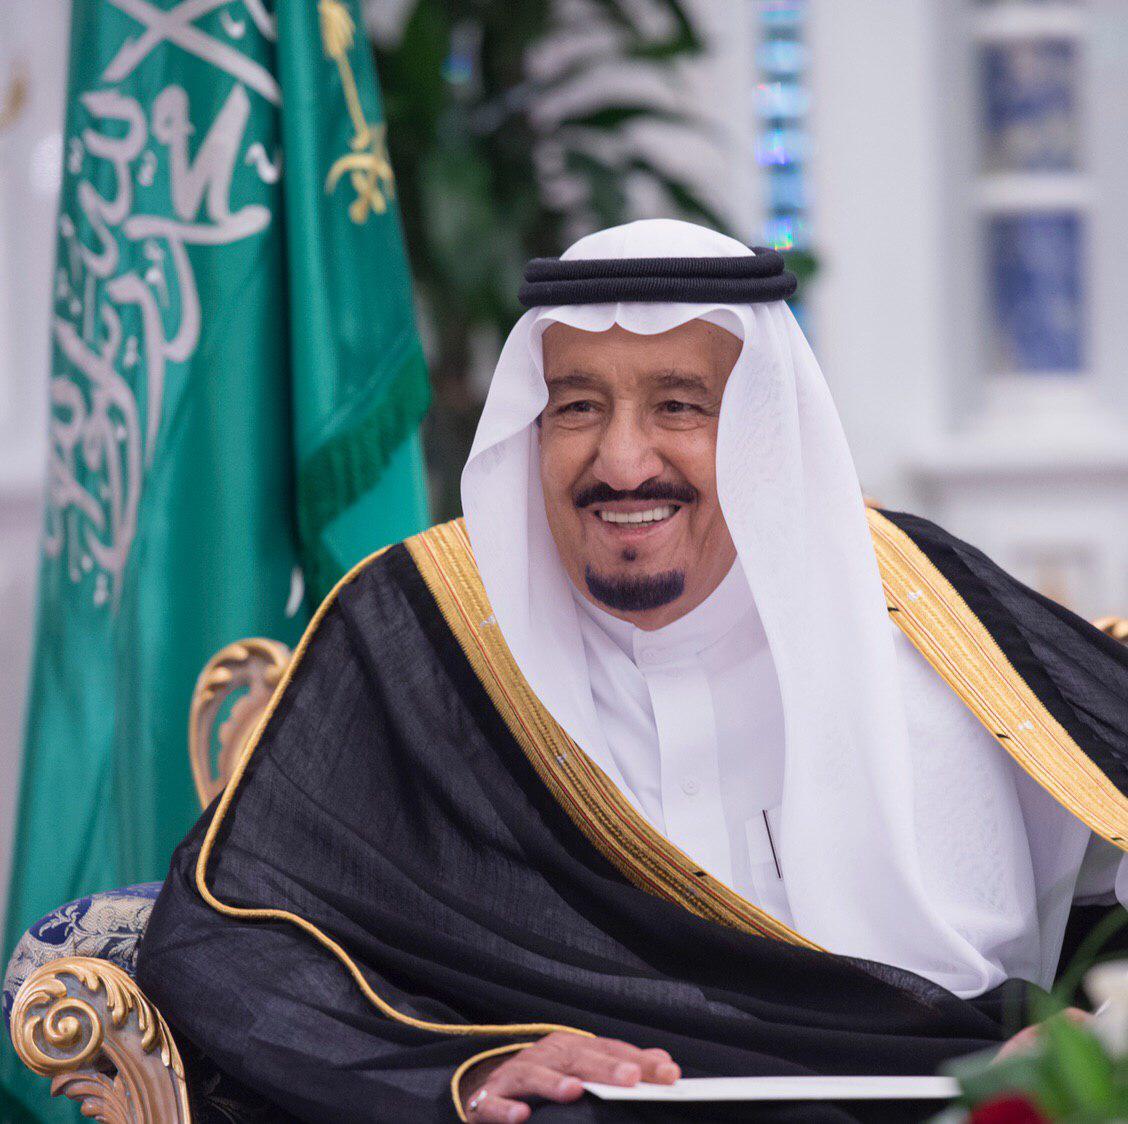 الملك سلمان يتلقى اتصالًا من رئيس المجلس العسكري بتشاد للتهنئة بعيد الفطر 